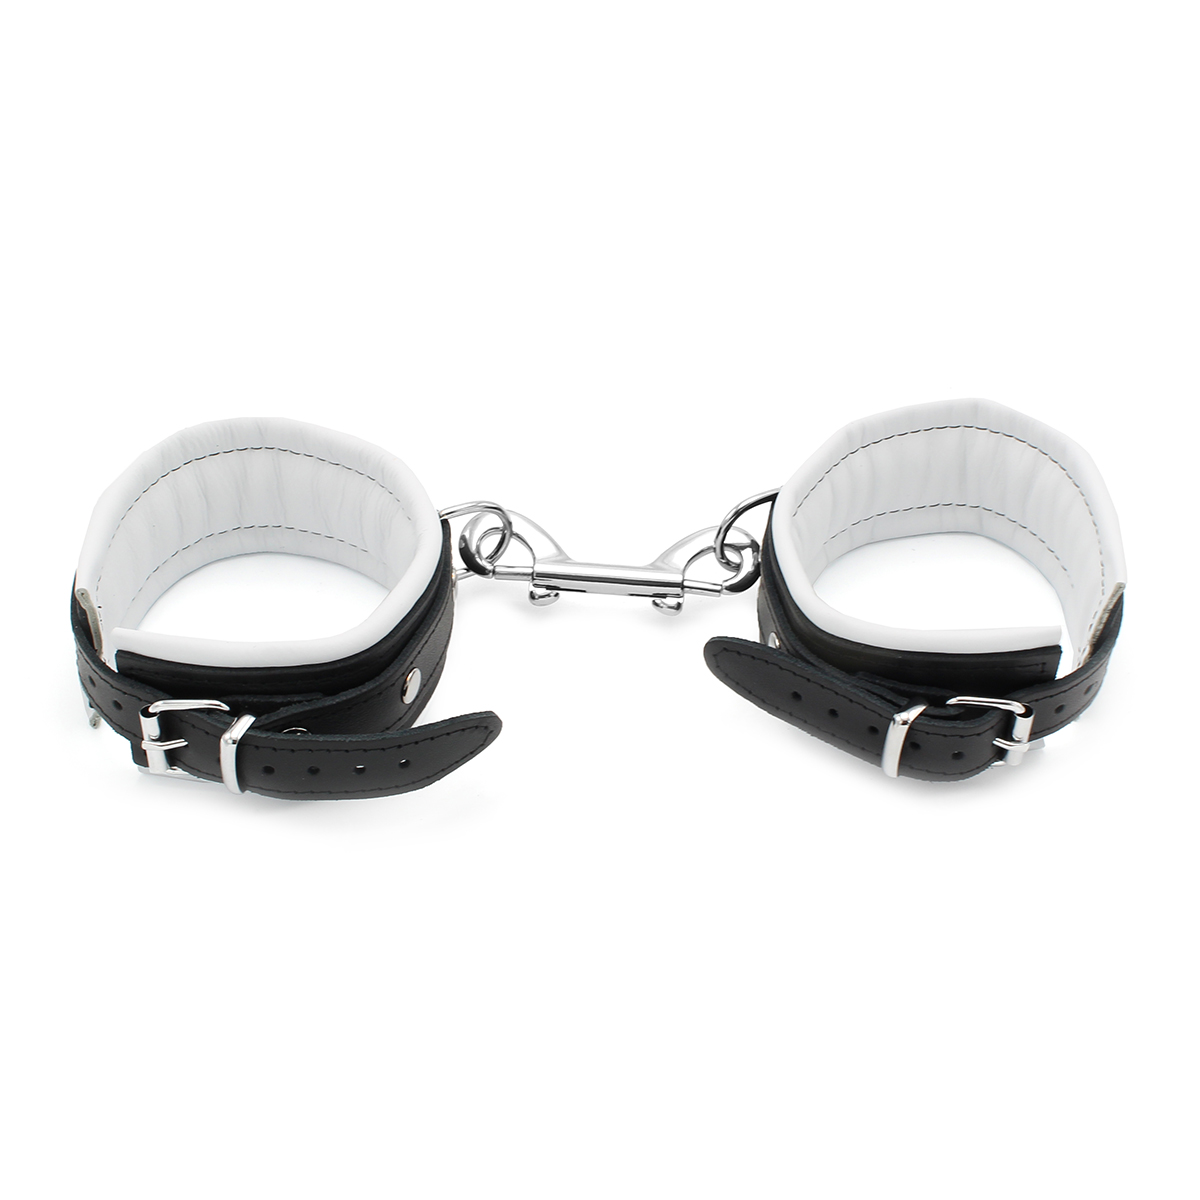 Leather-Anklecuffs-White-134-KIO-0306-1